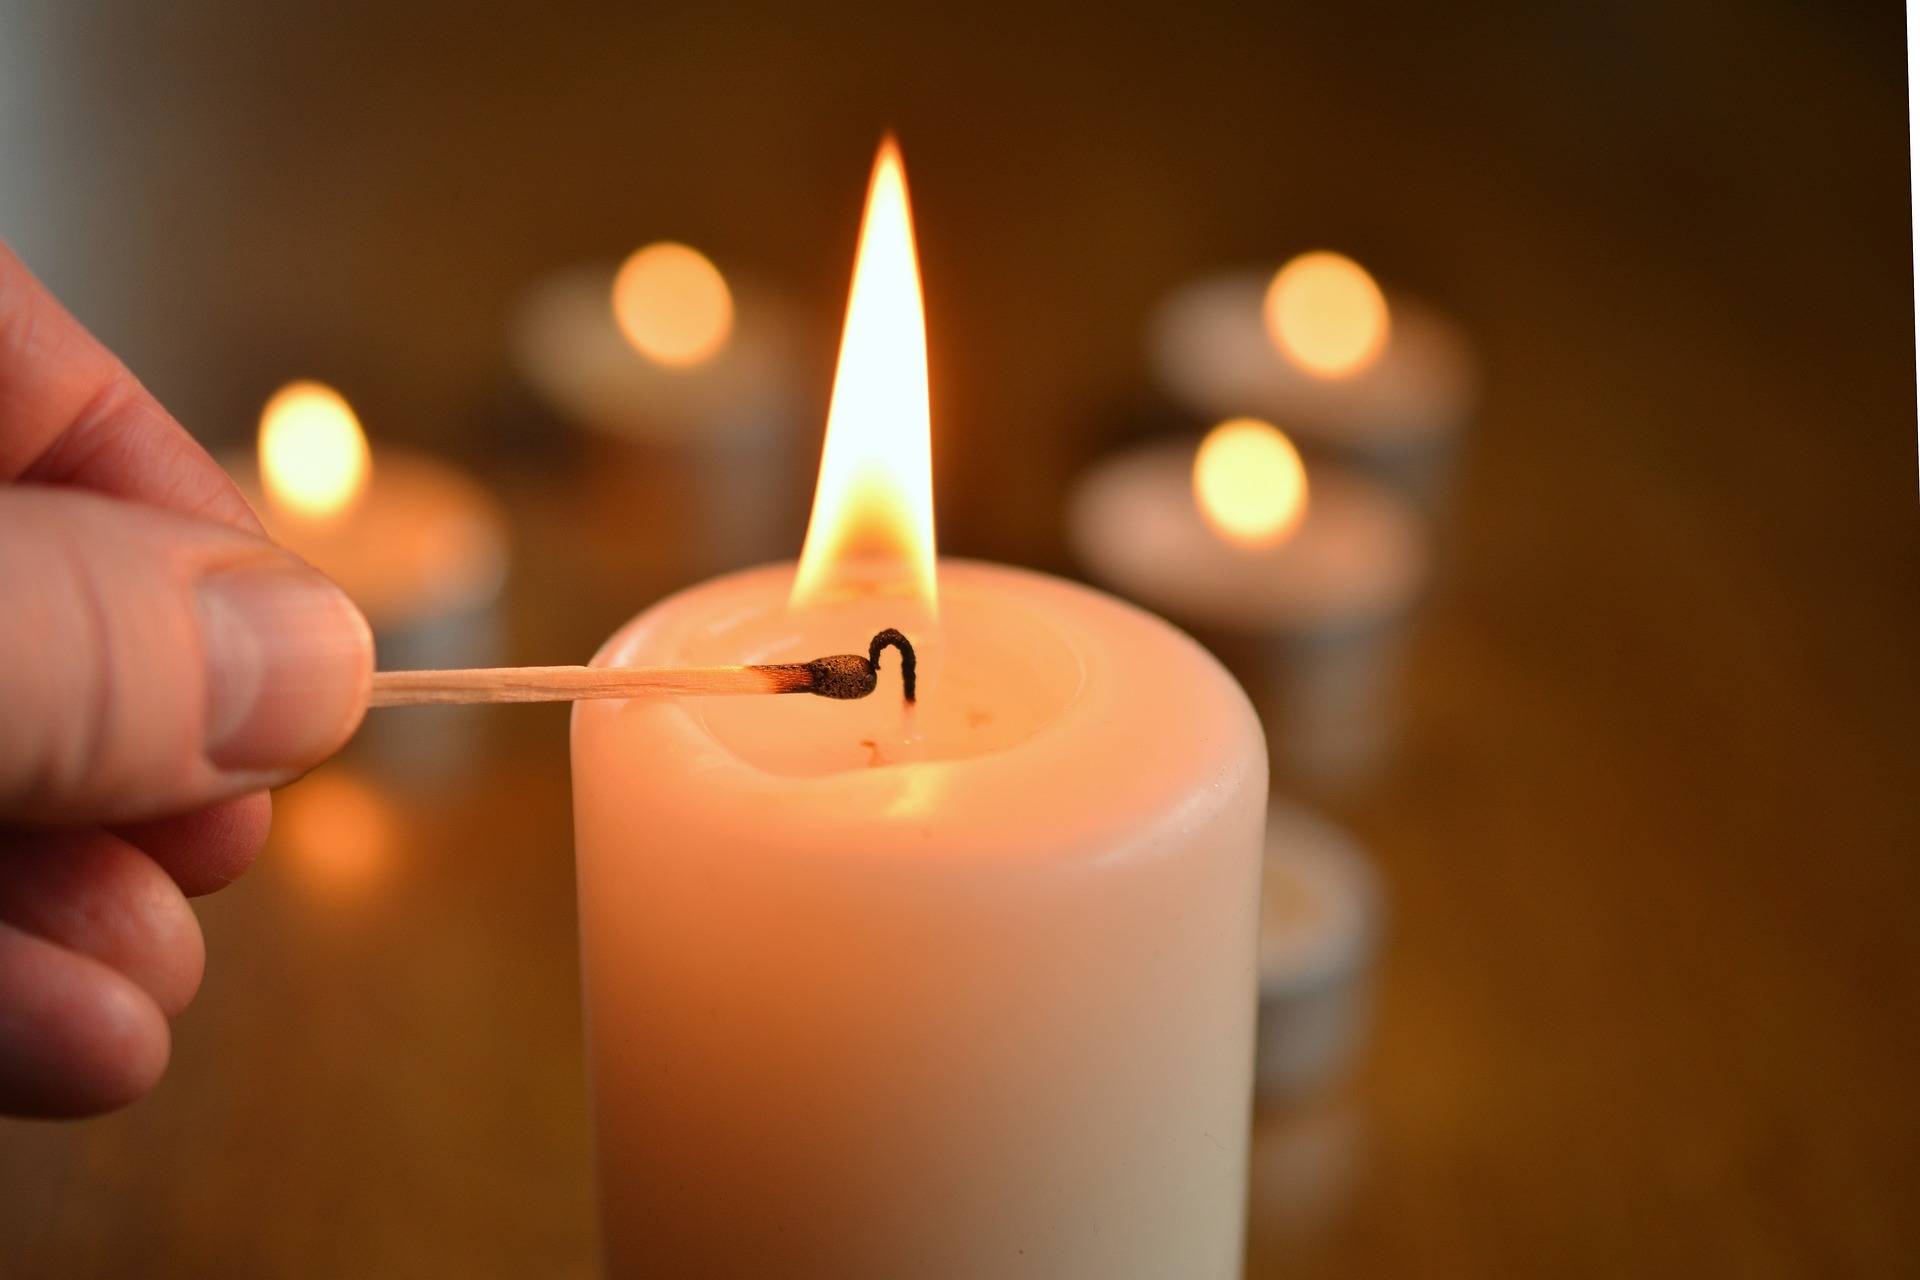 Kerzenreste für die Ukraine